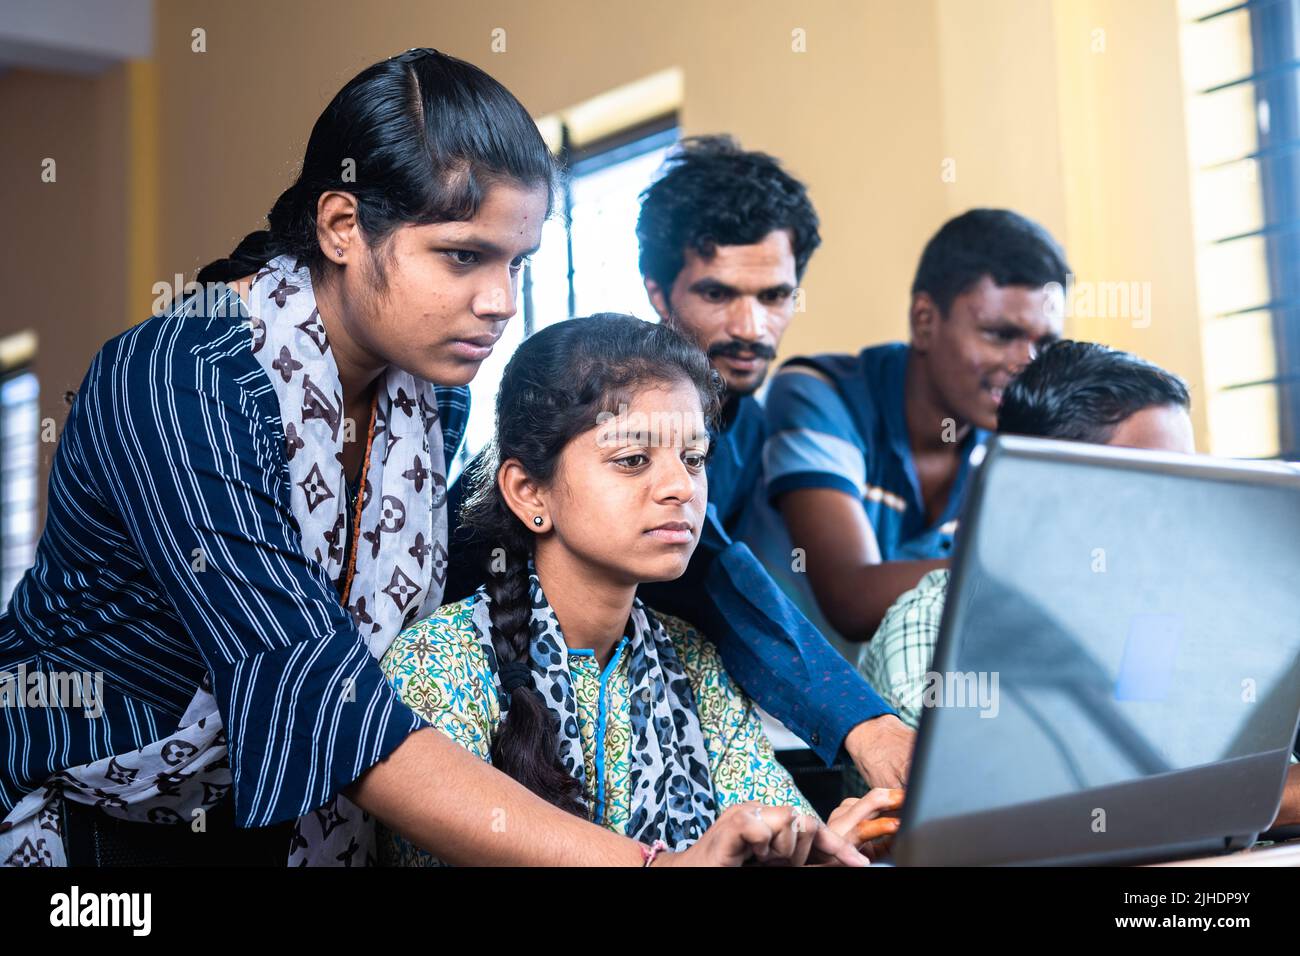 Grupos de estudiantes que usan seriamente la computadora portátil en el aula - concepto de tecnología, educación y autoaprendizaje Foto de stock